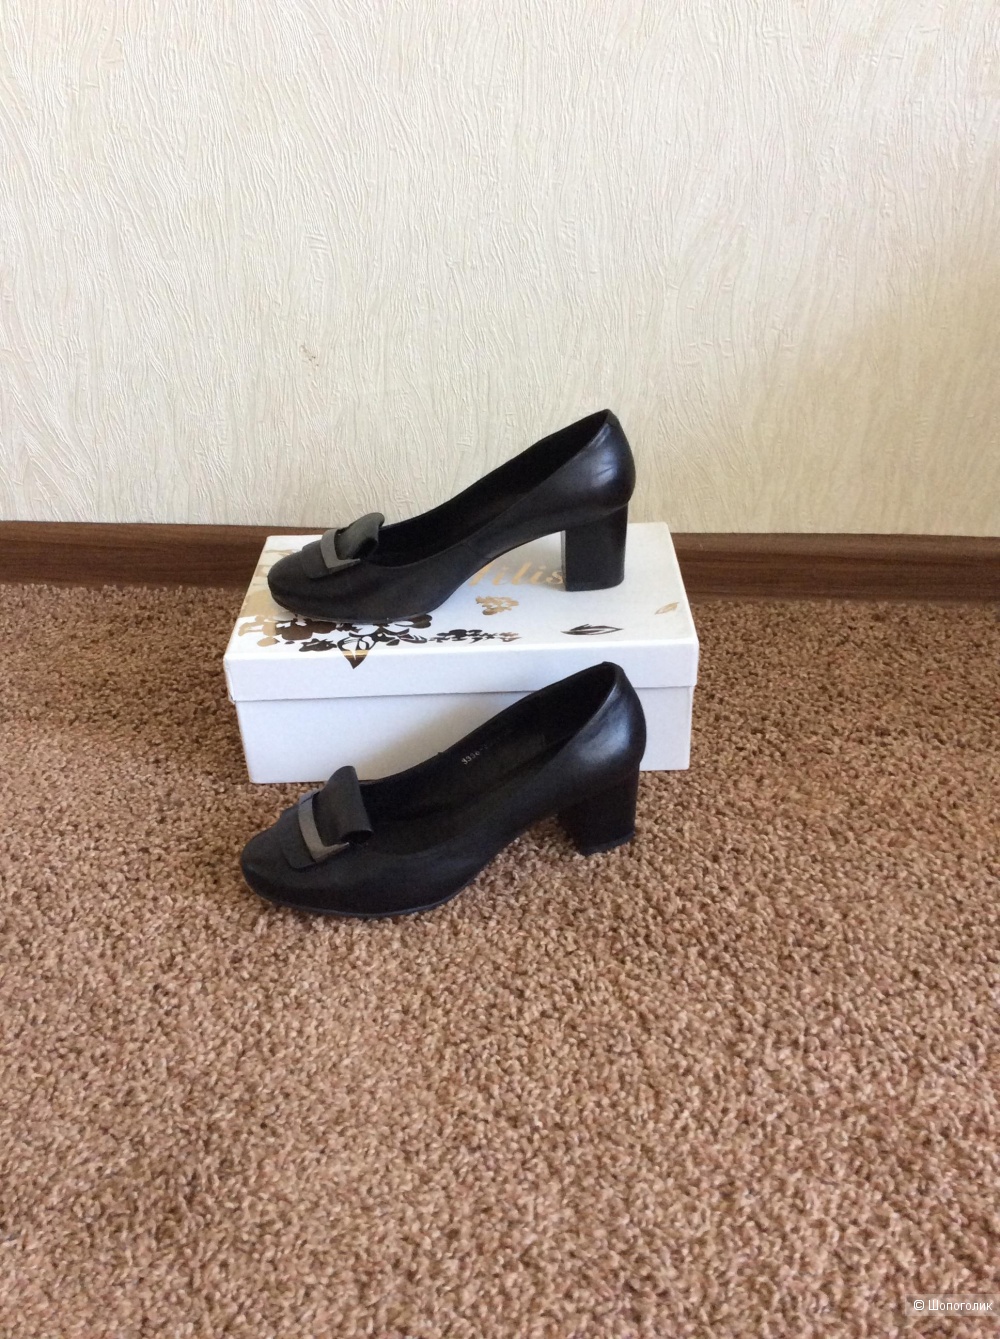 Туфли женские AILISA размер 36-36,5 россиский